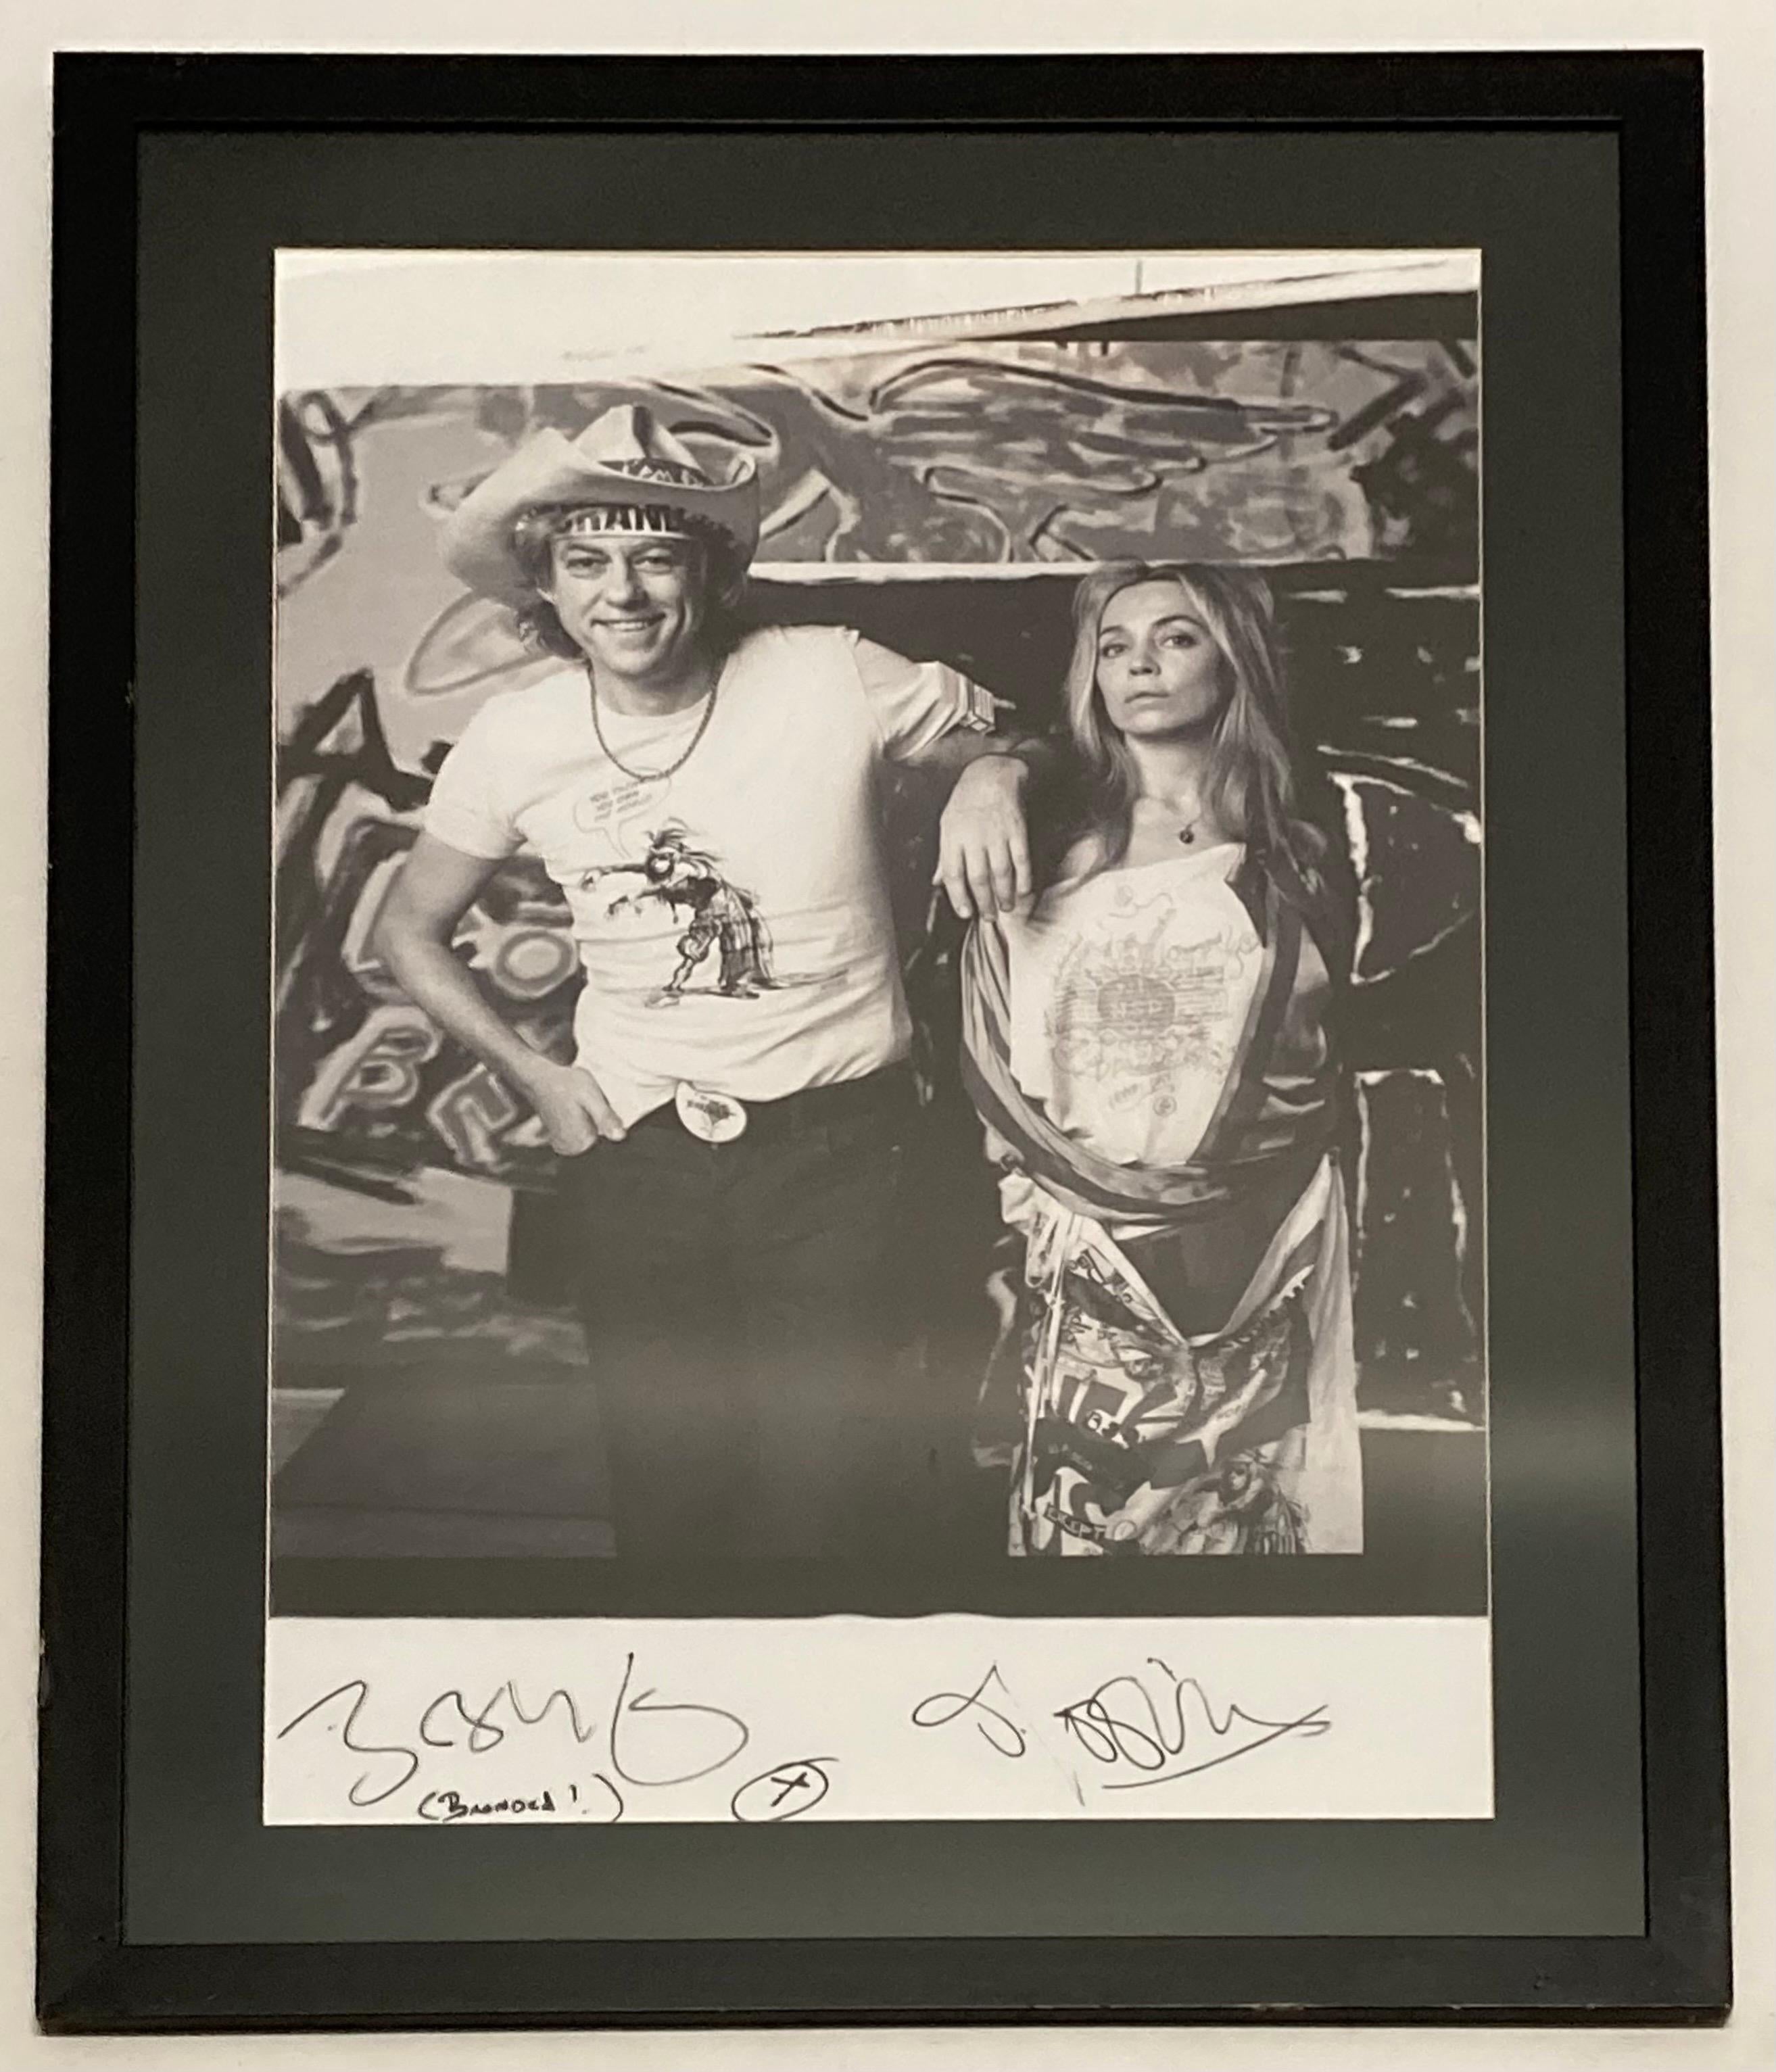 Ein großformatiges Polaroid von Bob Geldoff und Jeanne Marine für das von Opus in limitierter Auflage herausgegebene Buch Vivienne Westwood Active Resistance. Fotograf Zenon Texeira.

Signiert von Bob Geldoff und Jeanne Marine mit